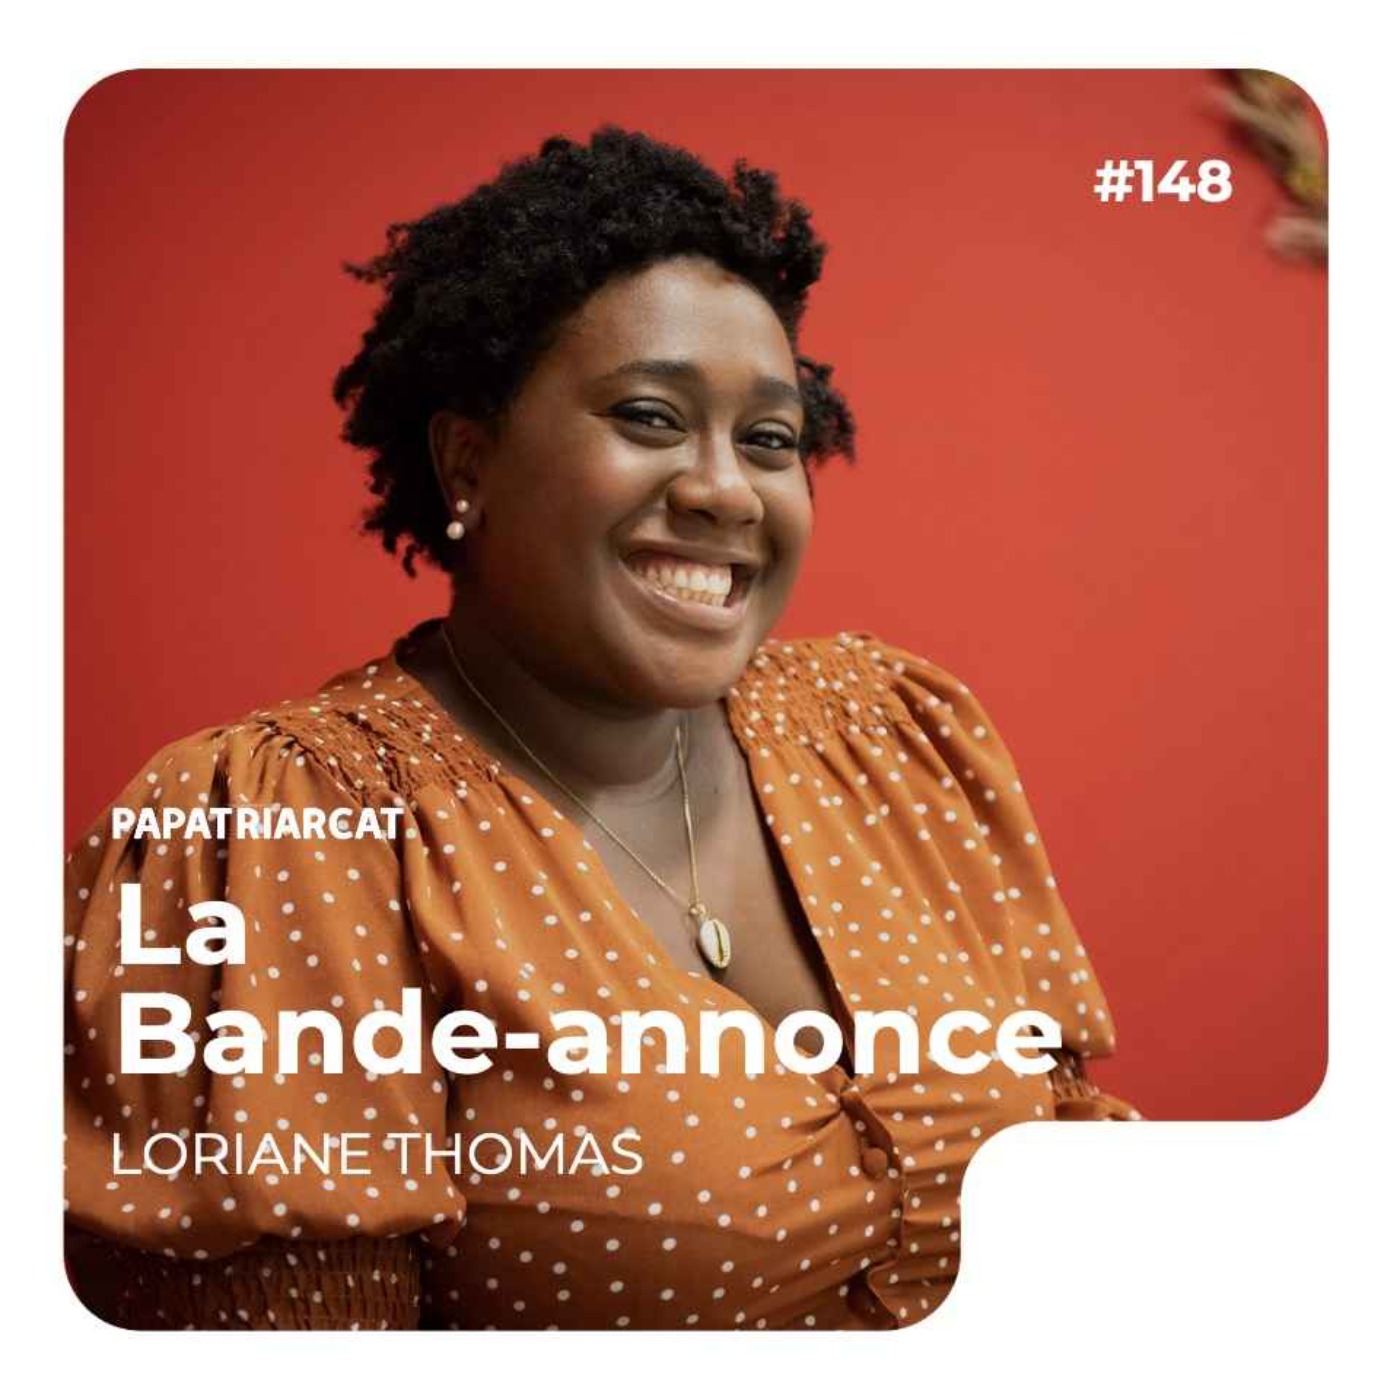 BANDE-ANNONCE - #148 - Parler des maternités multiculturelles - Loriane Thomas